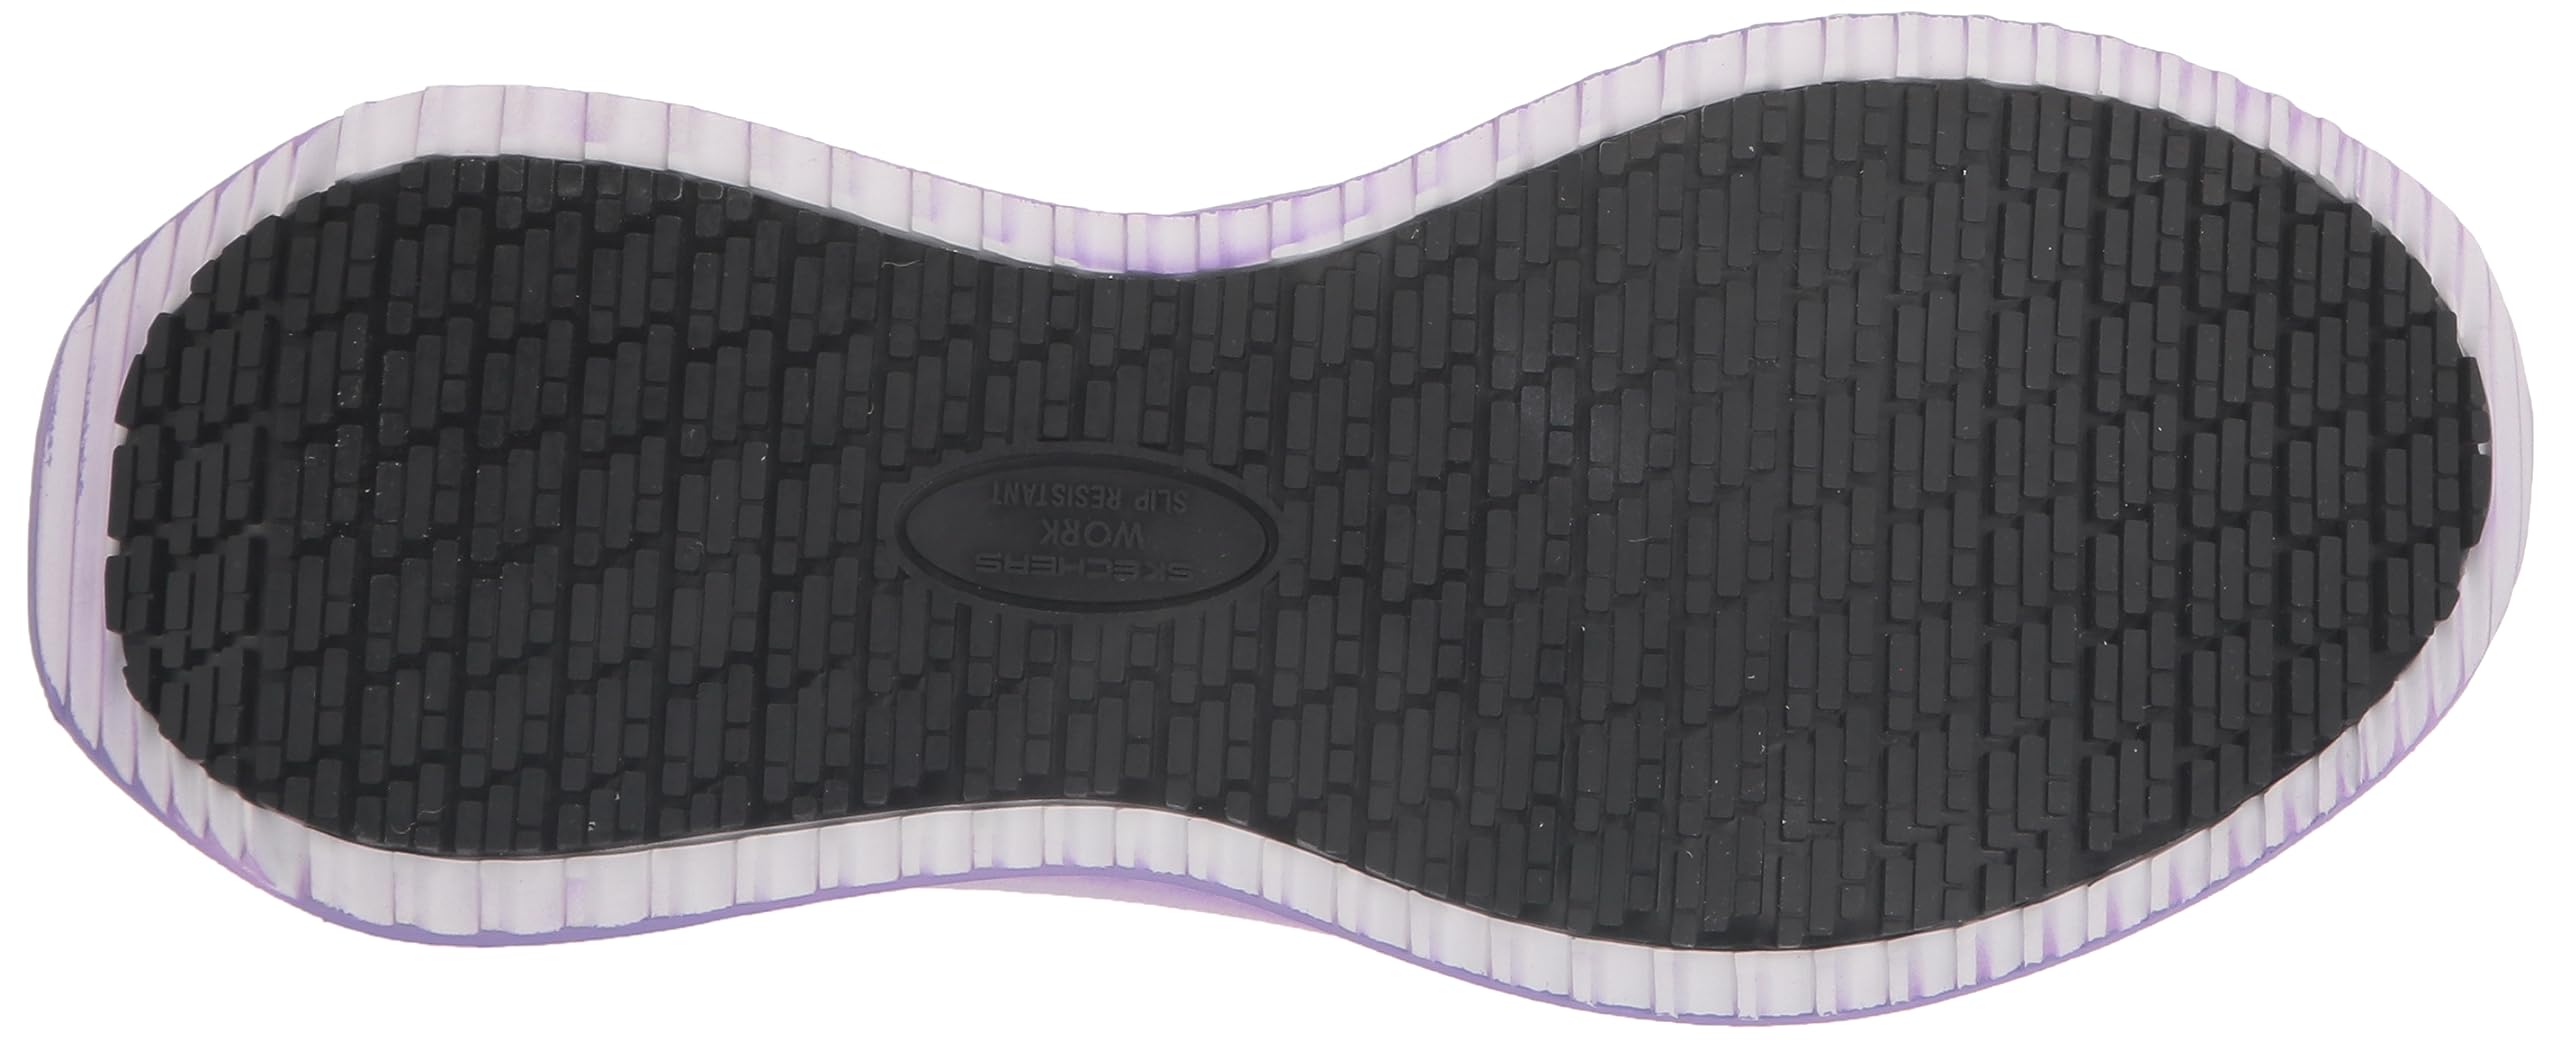 Skechers Women's Hands Free ins Work Tilido Ombray, Slip Resistant Comp Toe Industrial Shoe